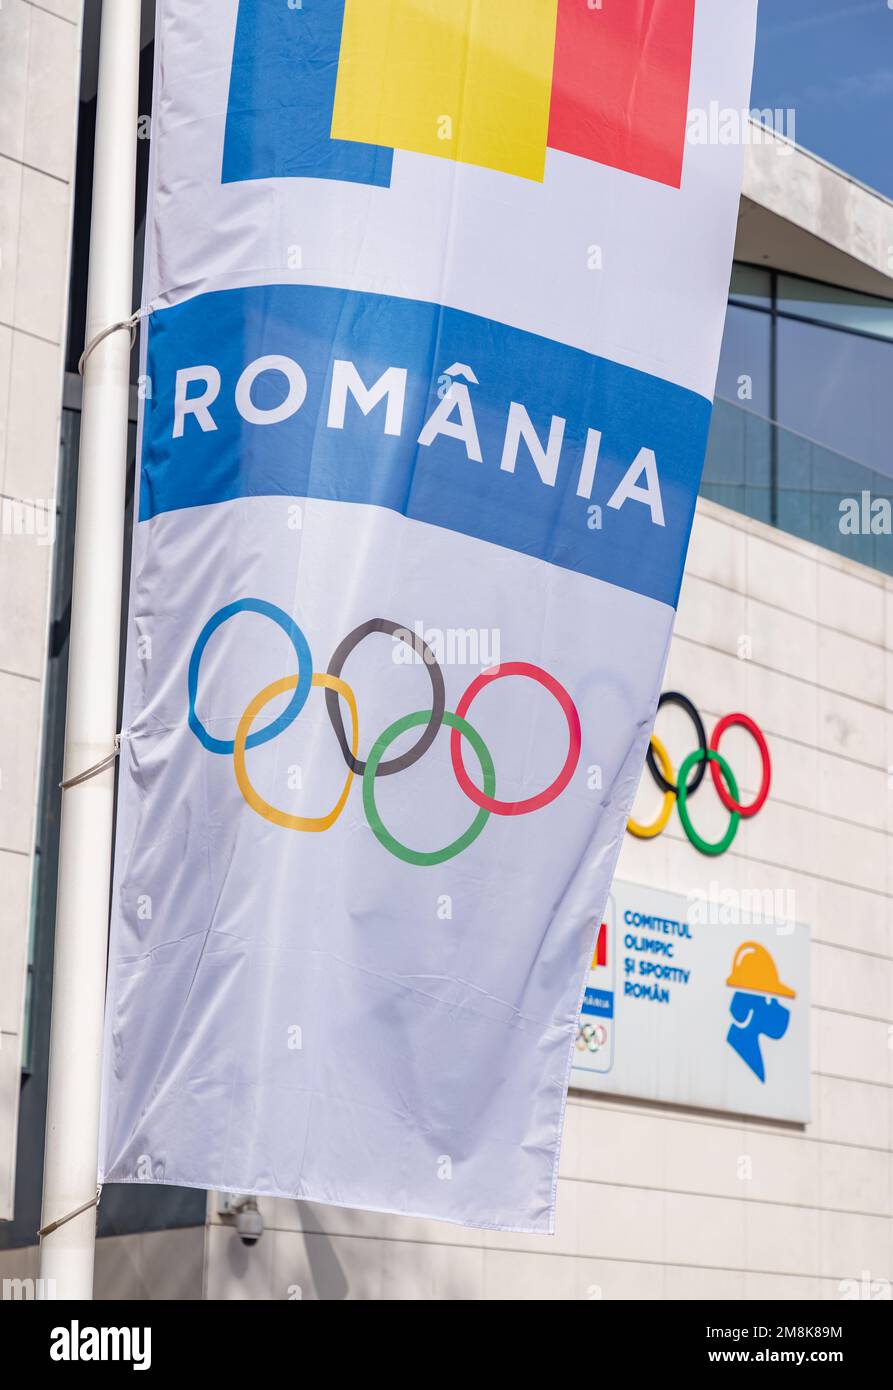 Ein Bild der Symbole des rumänischen Olympischen Komitees und des rumänischen Sportkomitees. Stockfoto